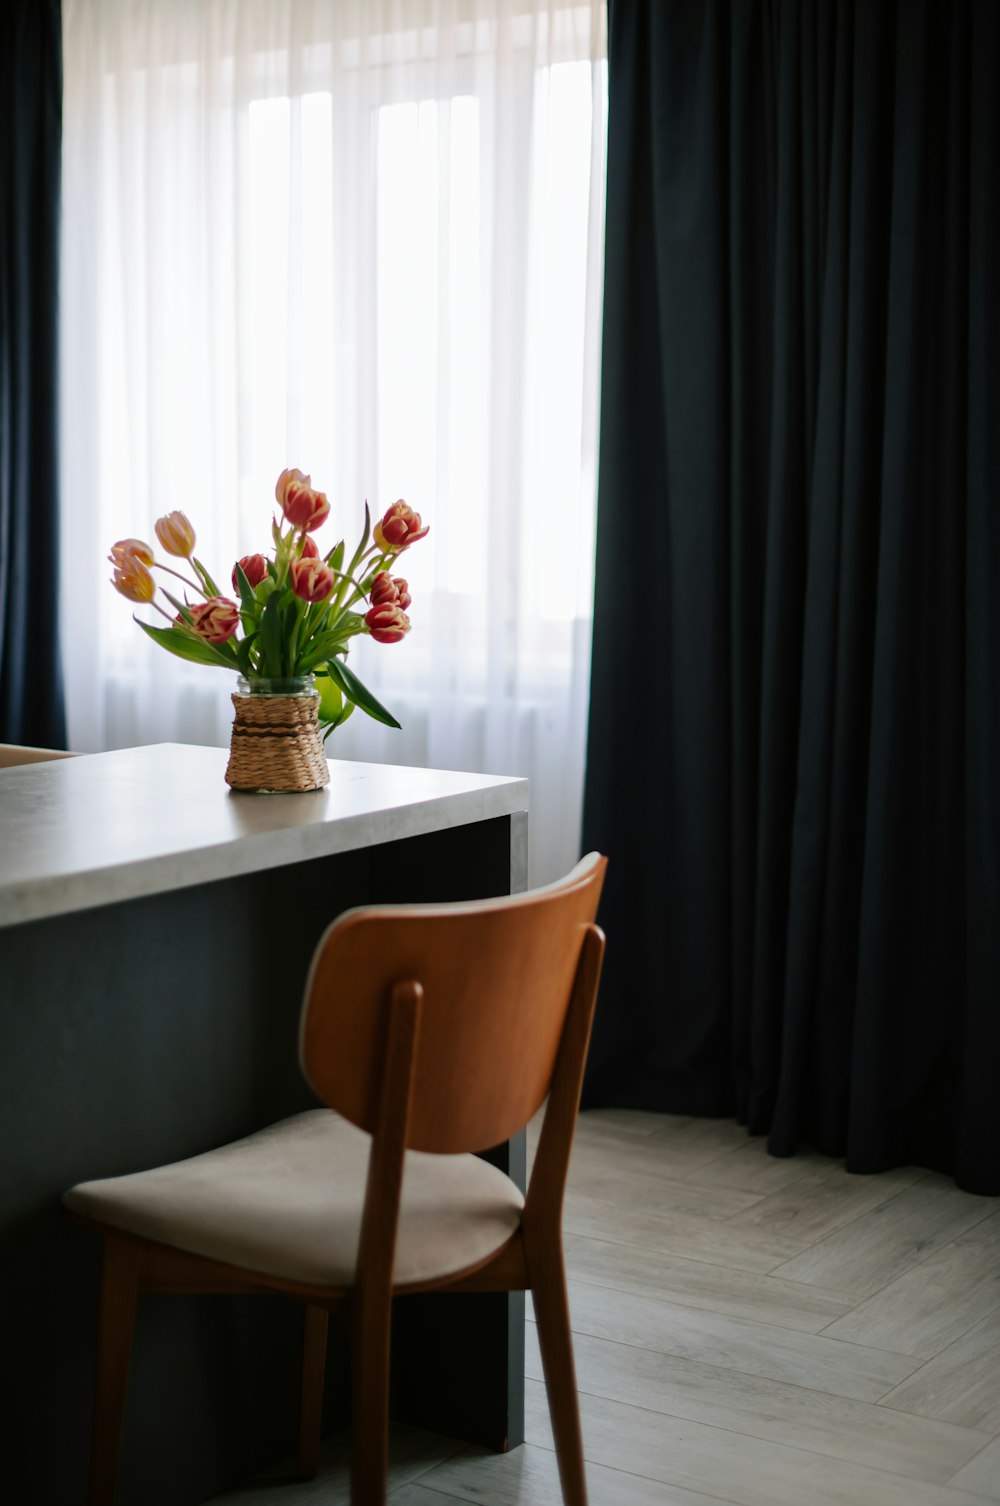 Um vaso de tulipas fica em um balcão ao lado de uma cadeira